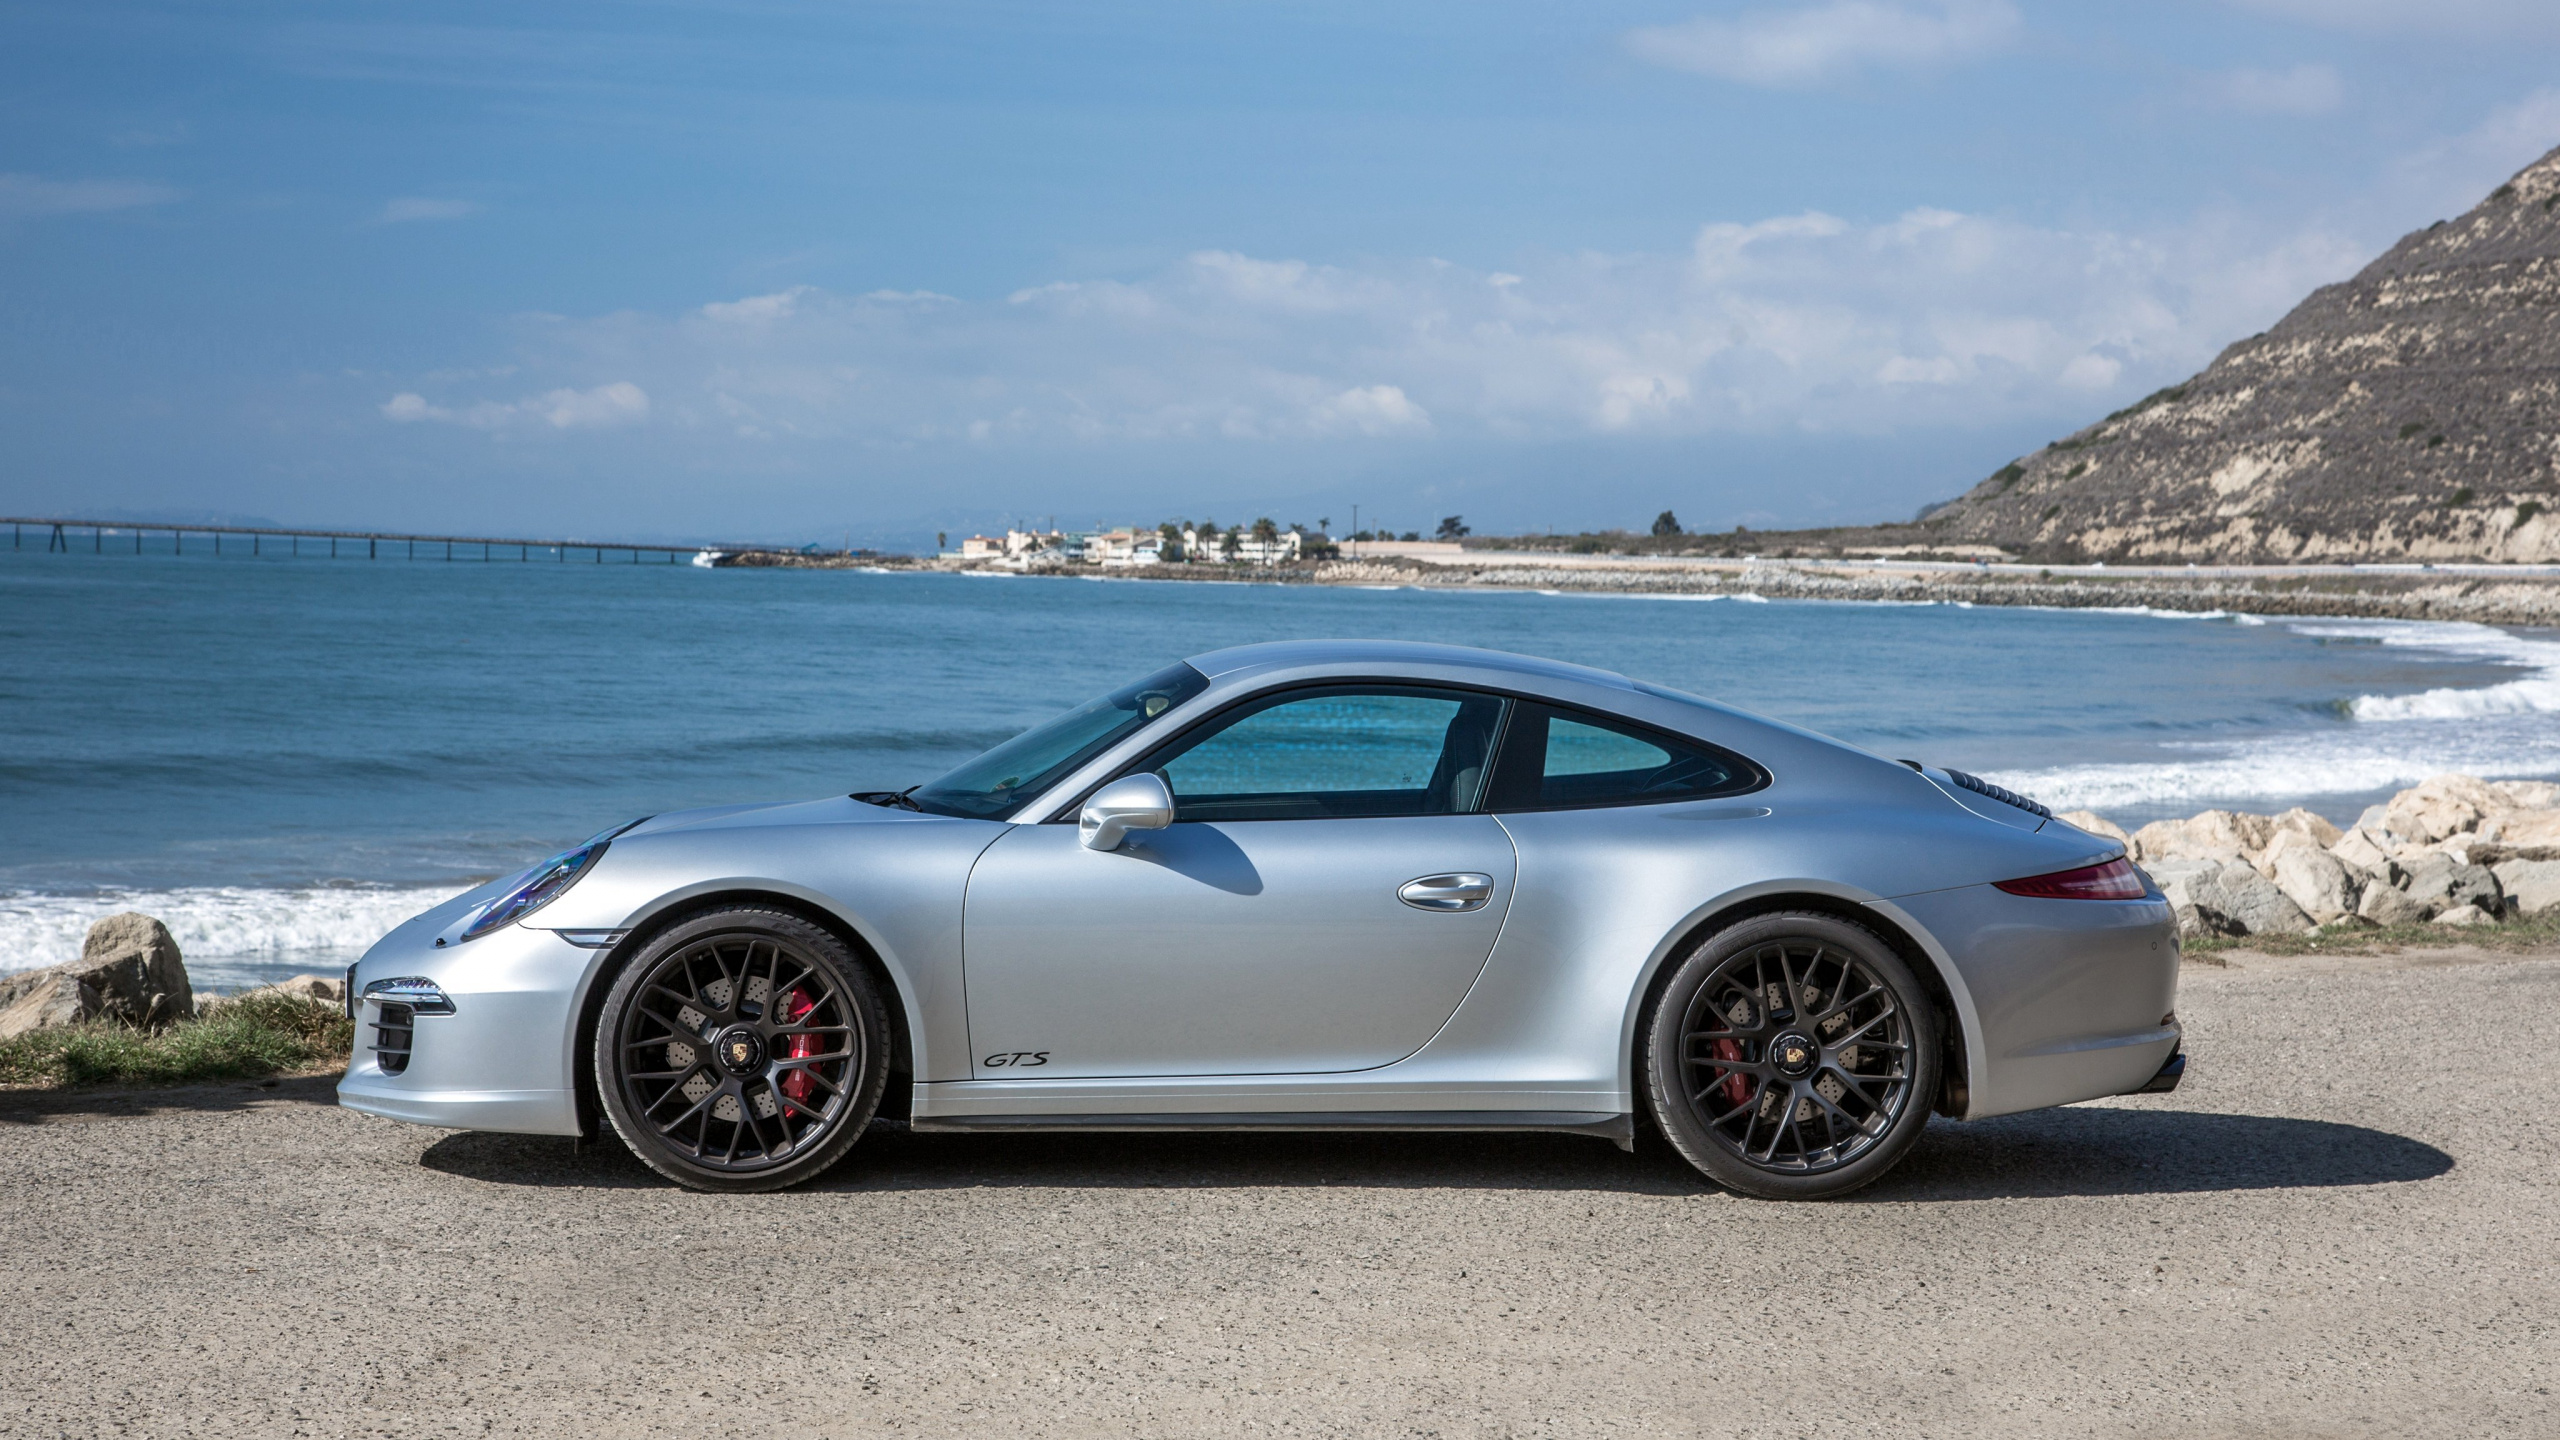 Silver Porsche 911 Garée Sur Mer Pendant la Journée. Wallpaper in 2560x1440 Resolution